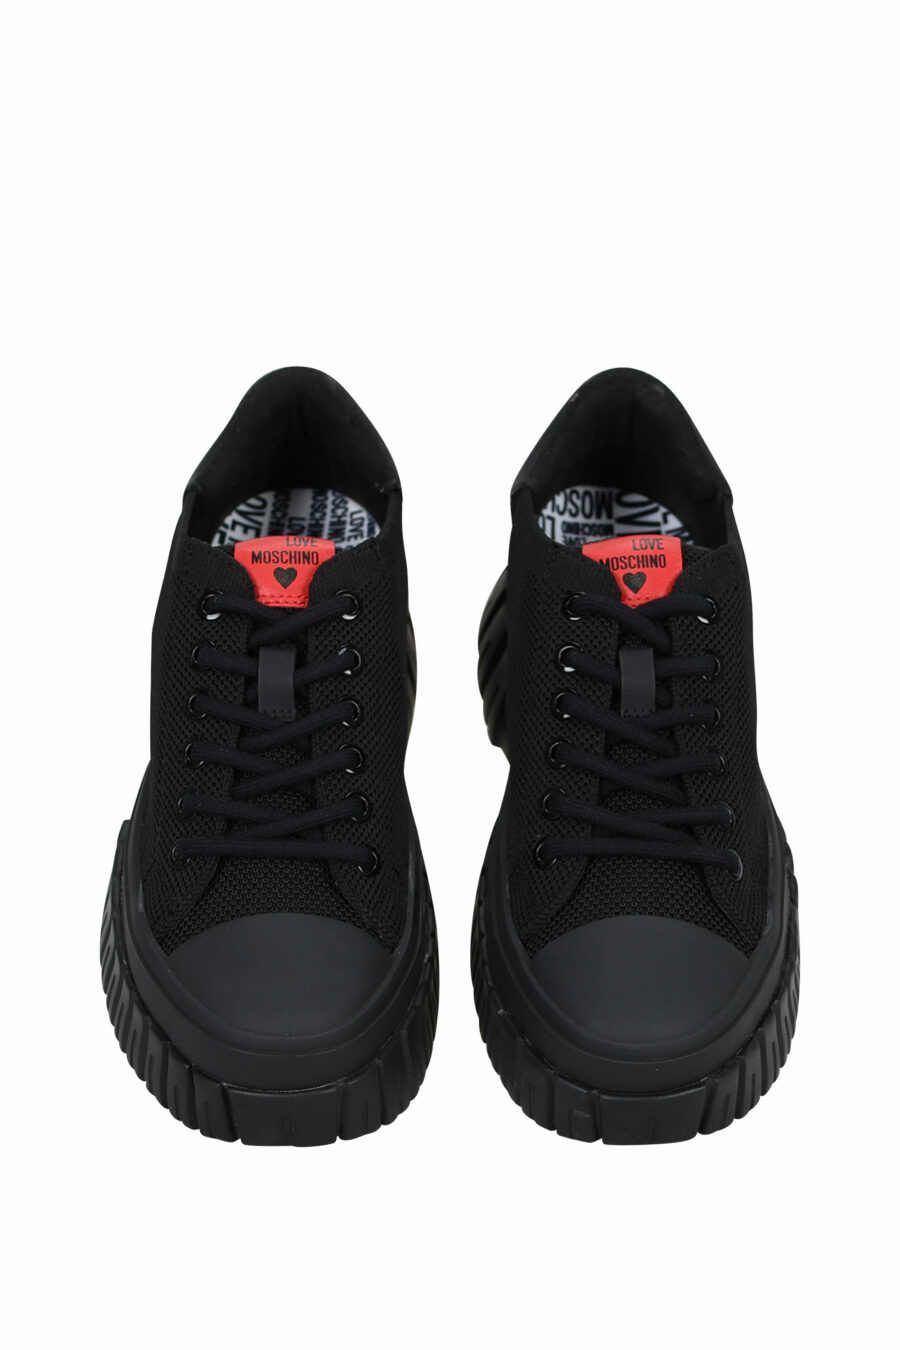 Zapatillas negras mix con logo - 8054653167971 4